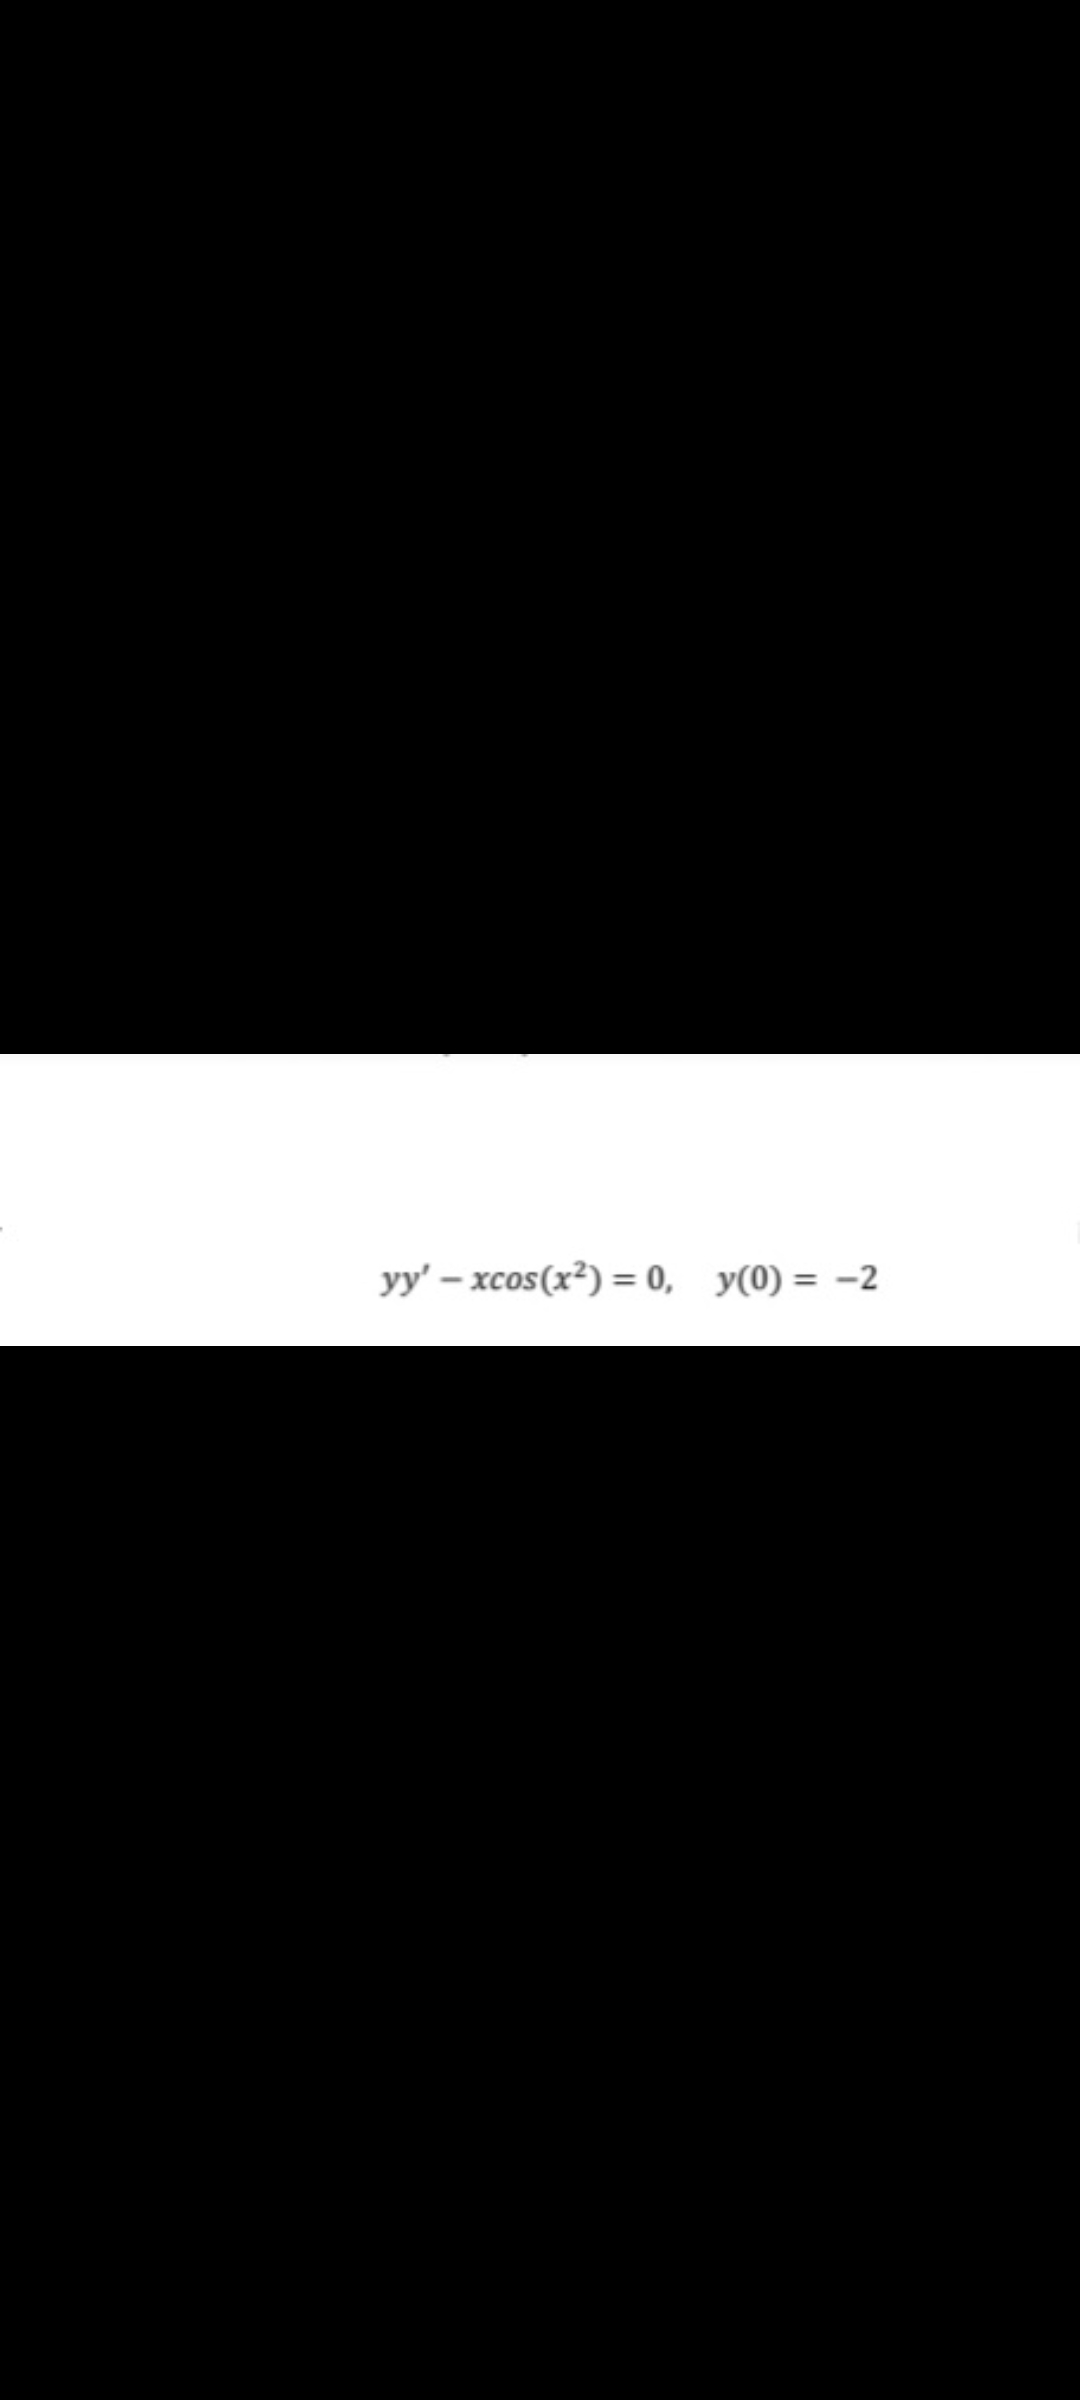 yy' – xcos(x²) = 0, y(0) = -2
